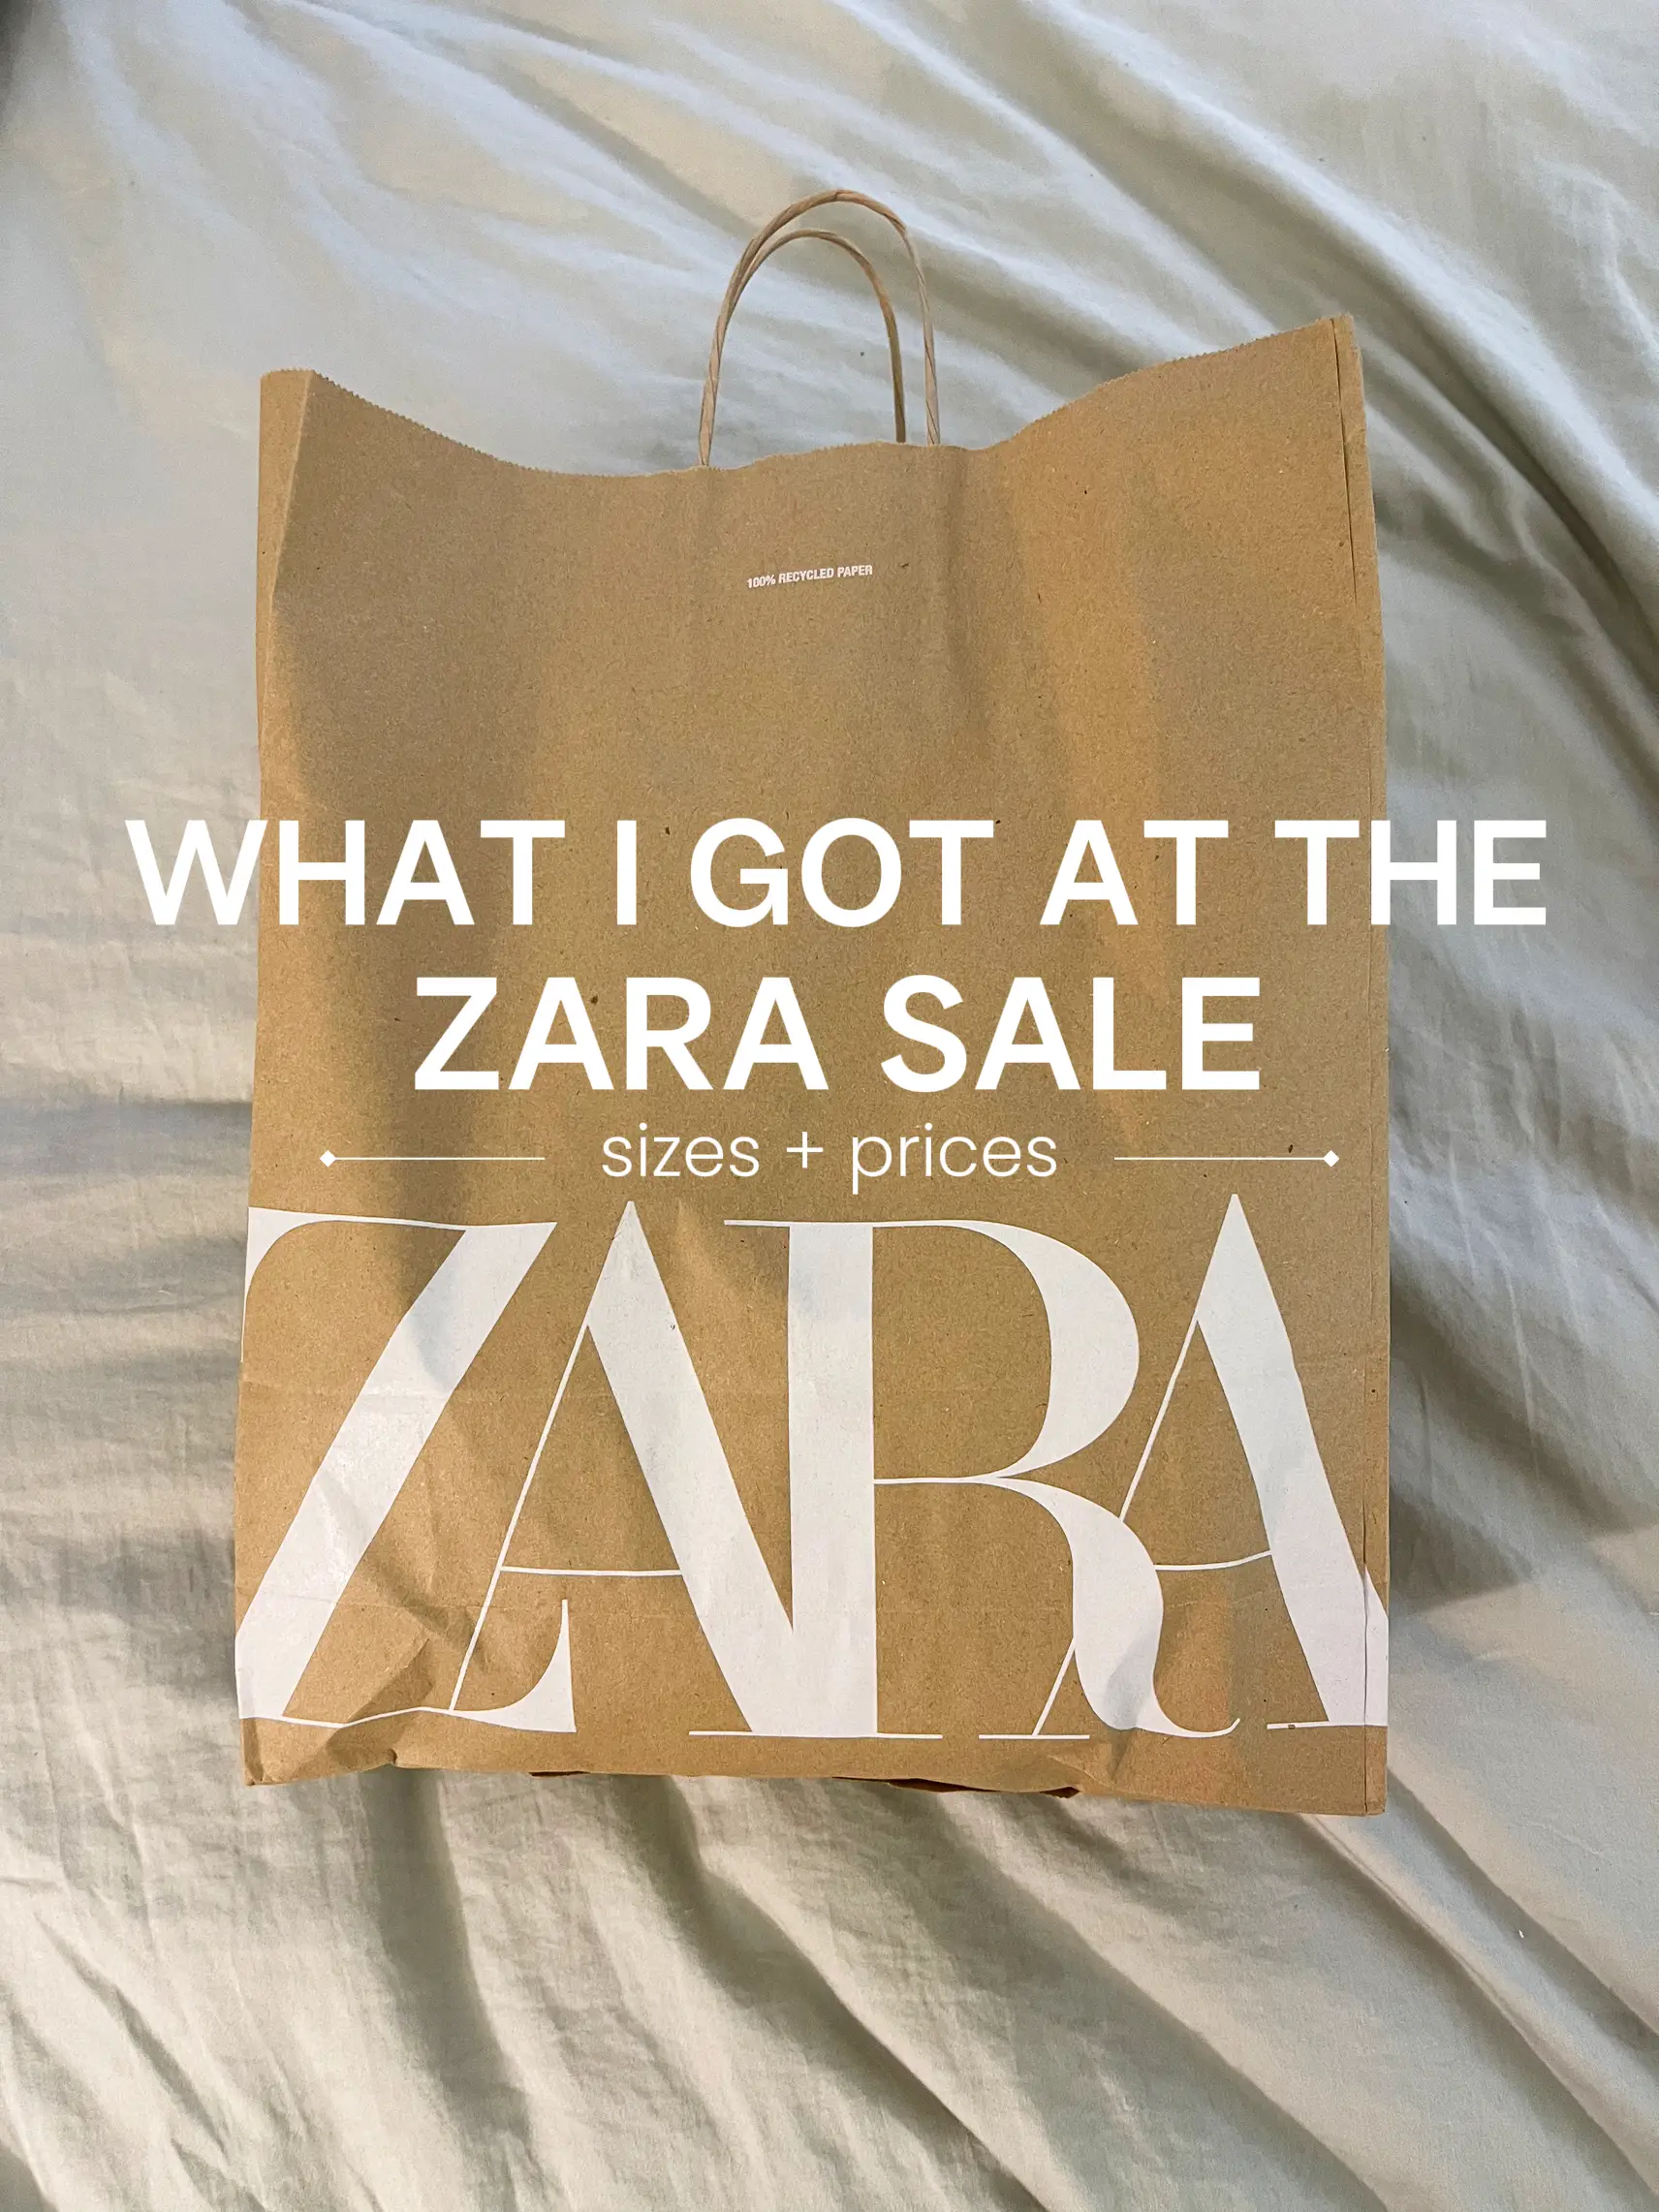 When is Zara's Semi-Annual Sale?